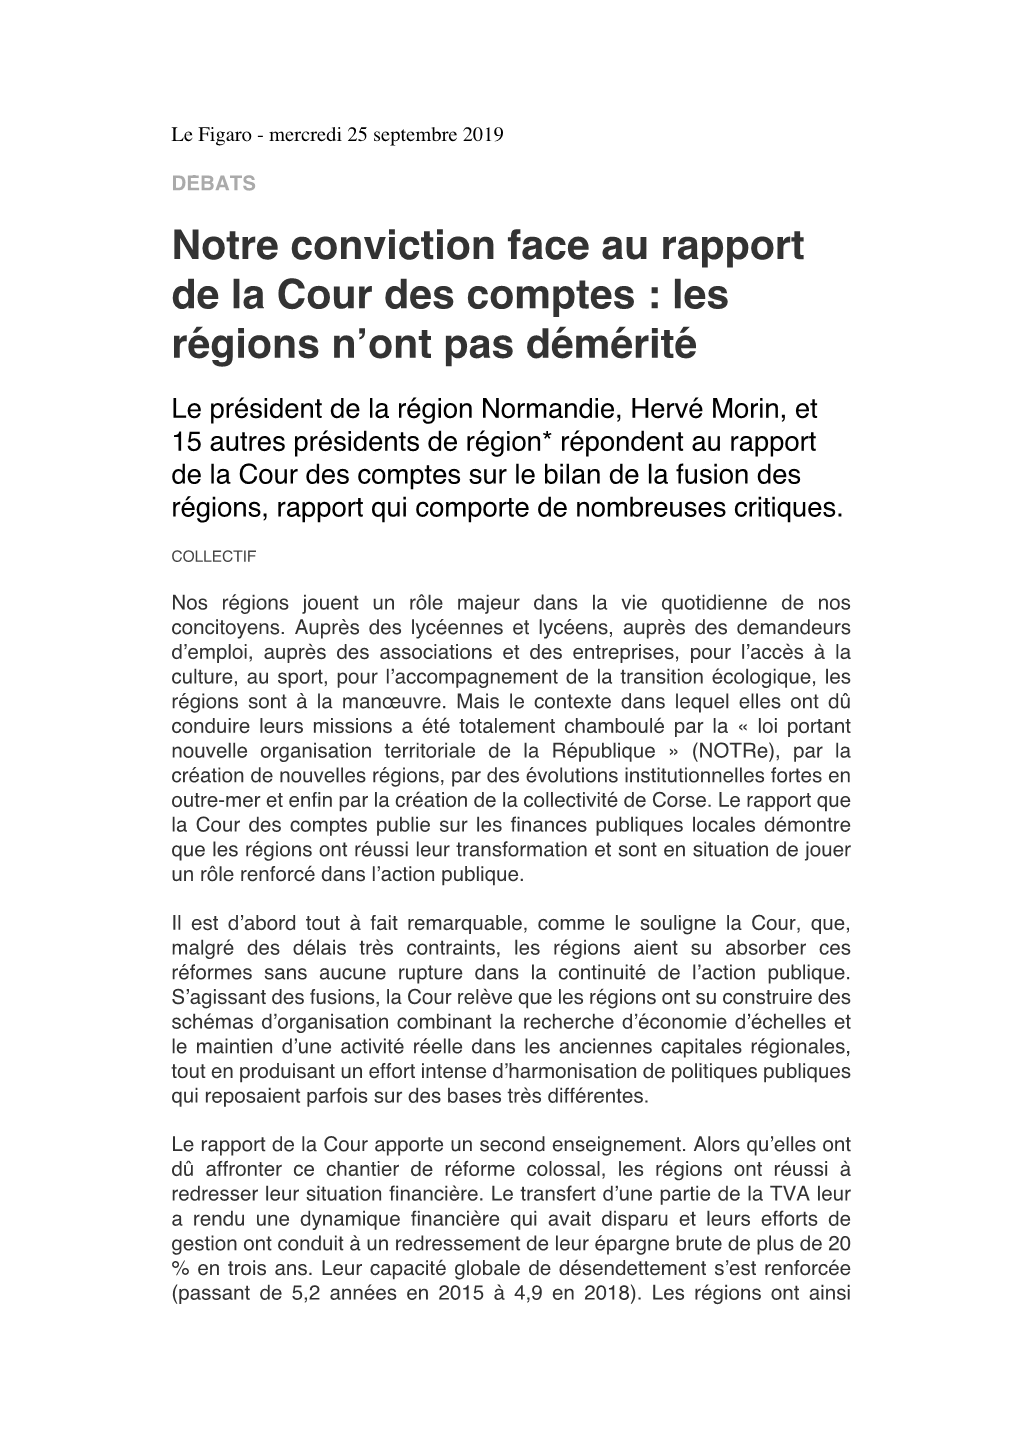 Notre Conviction Face Au Rapport De La Cour Des Comptes : Les Regionś N’Ont Pas Deḿ Erit́ E ́